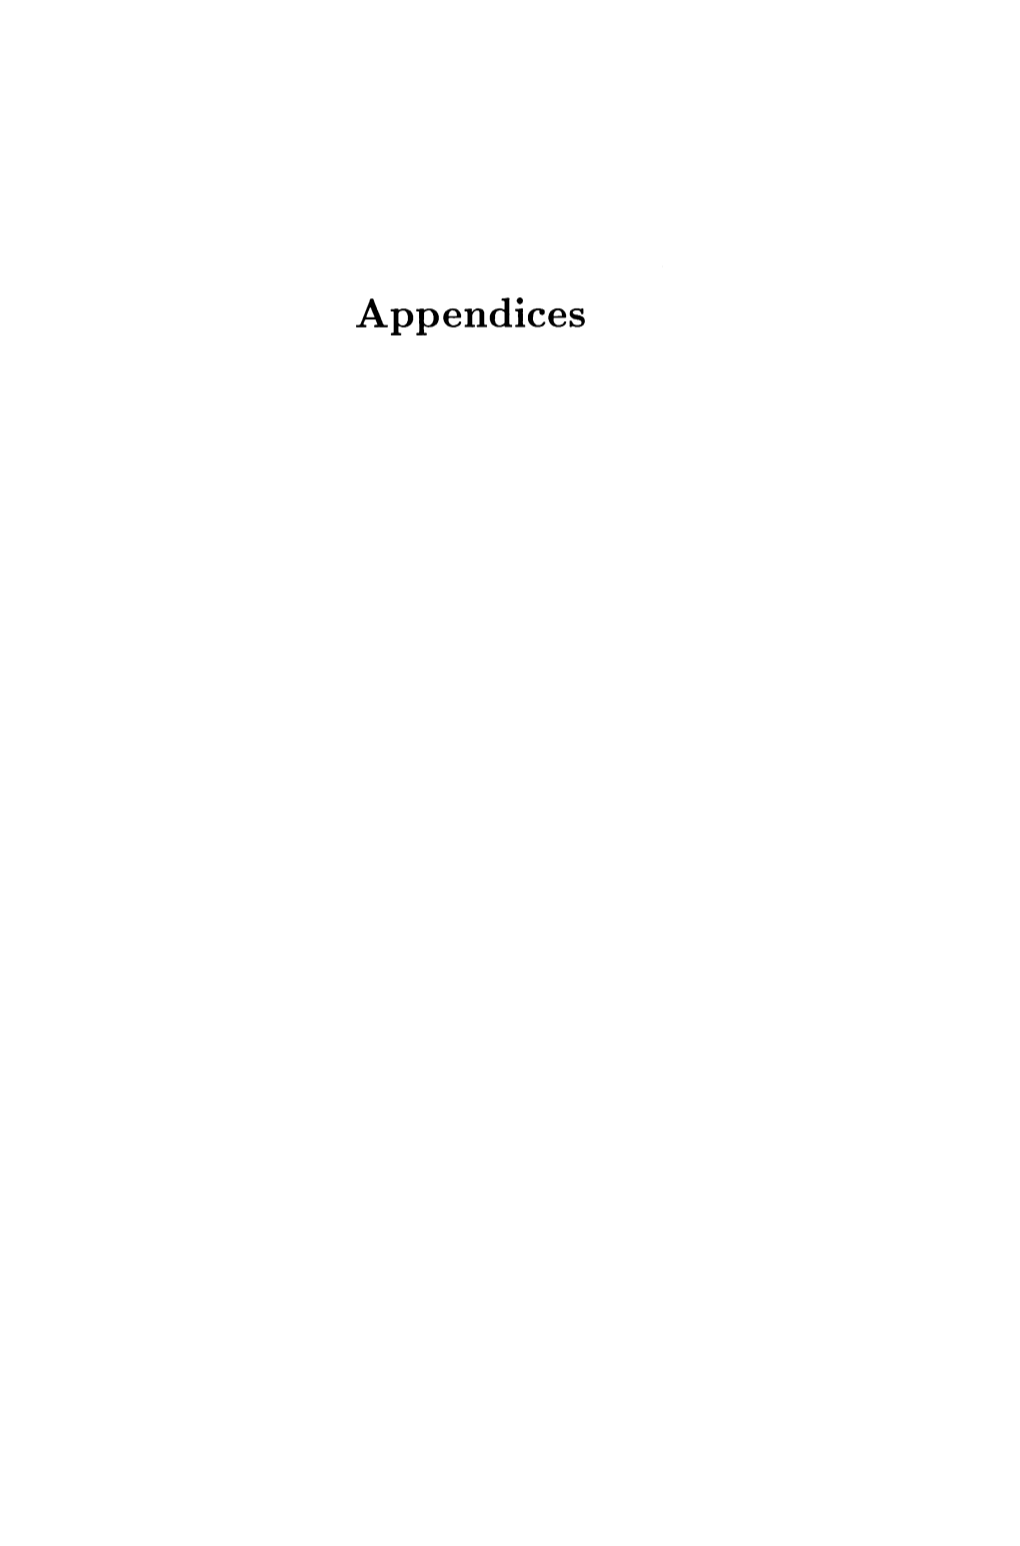 Appendices Appendix A